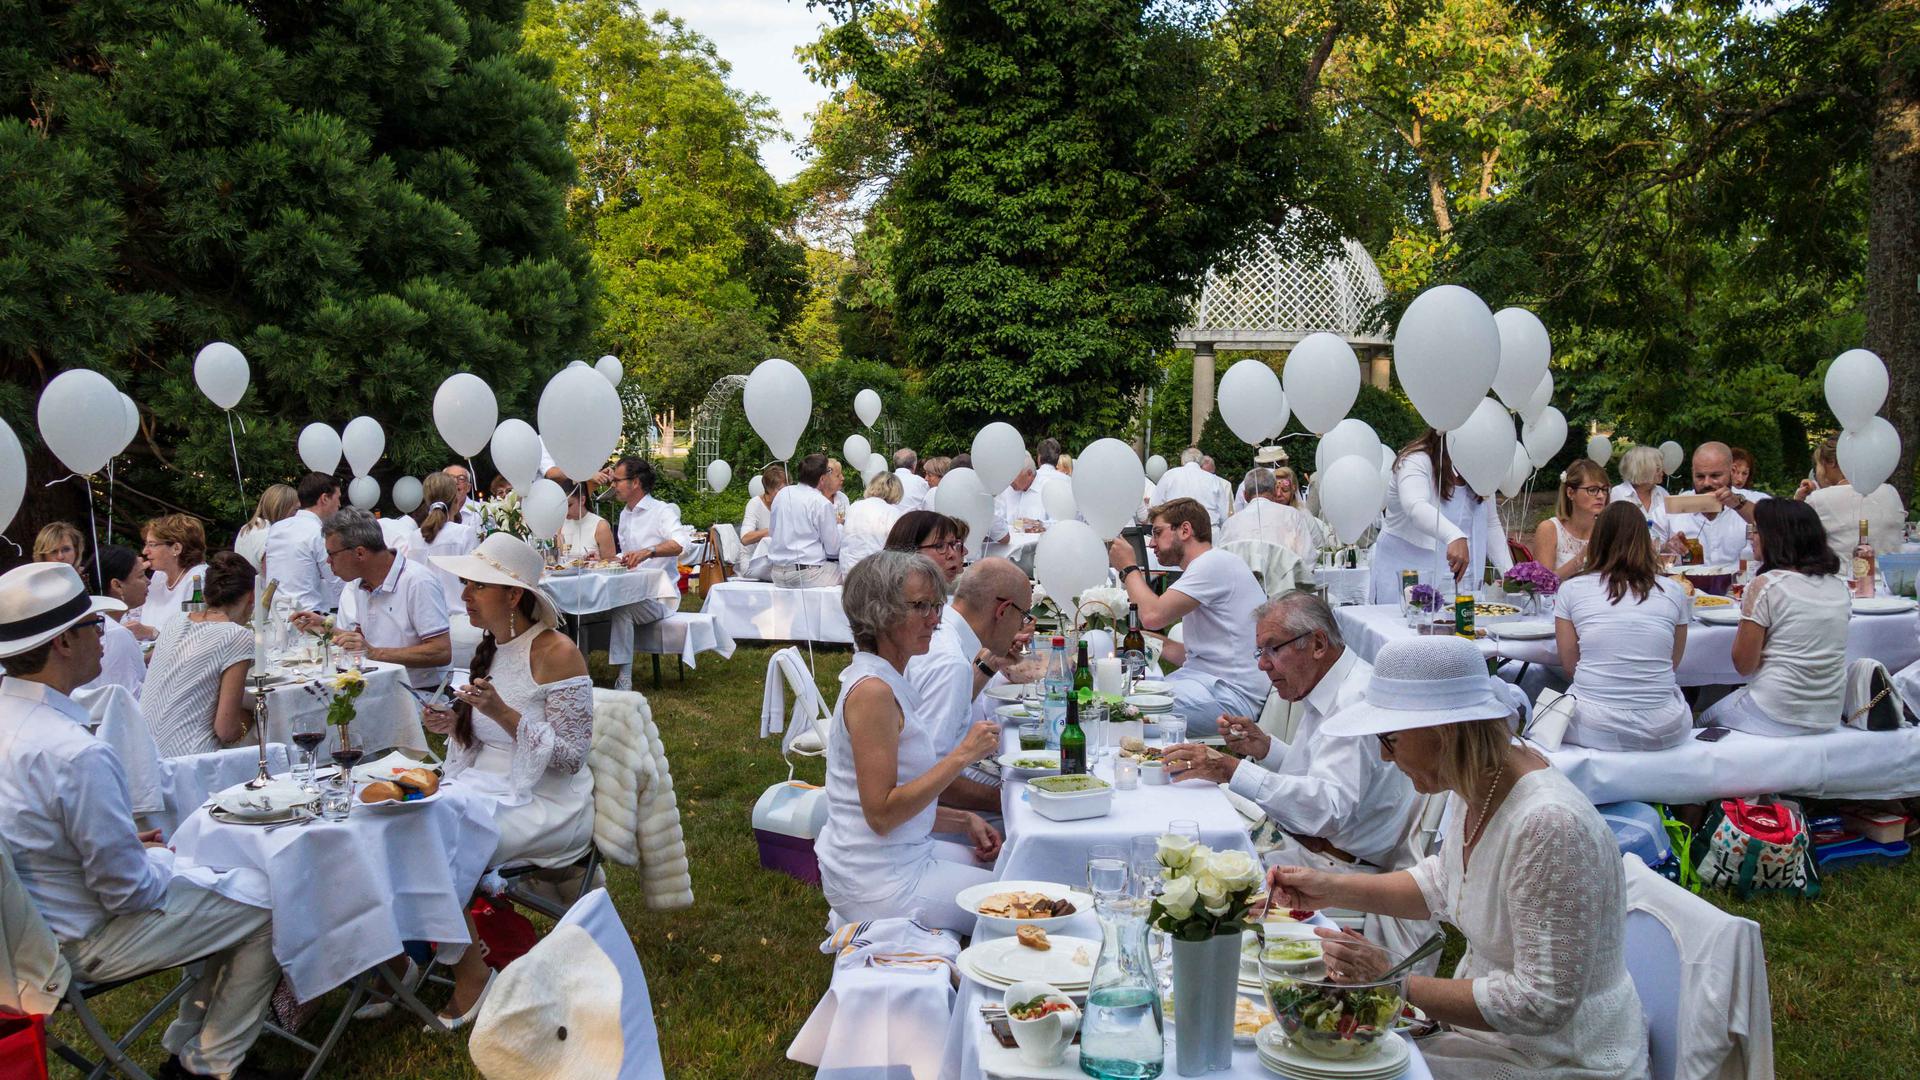 Ganz in Weiß und unter freiem Himmel: Beim„Dîner en blanc“ kommen Menschen zum gemeinsamen Picknick zusammen.